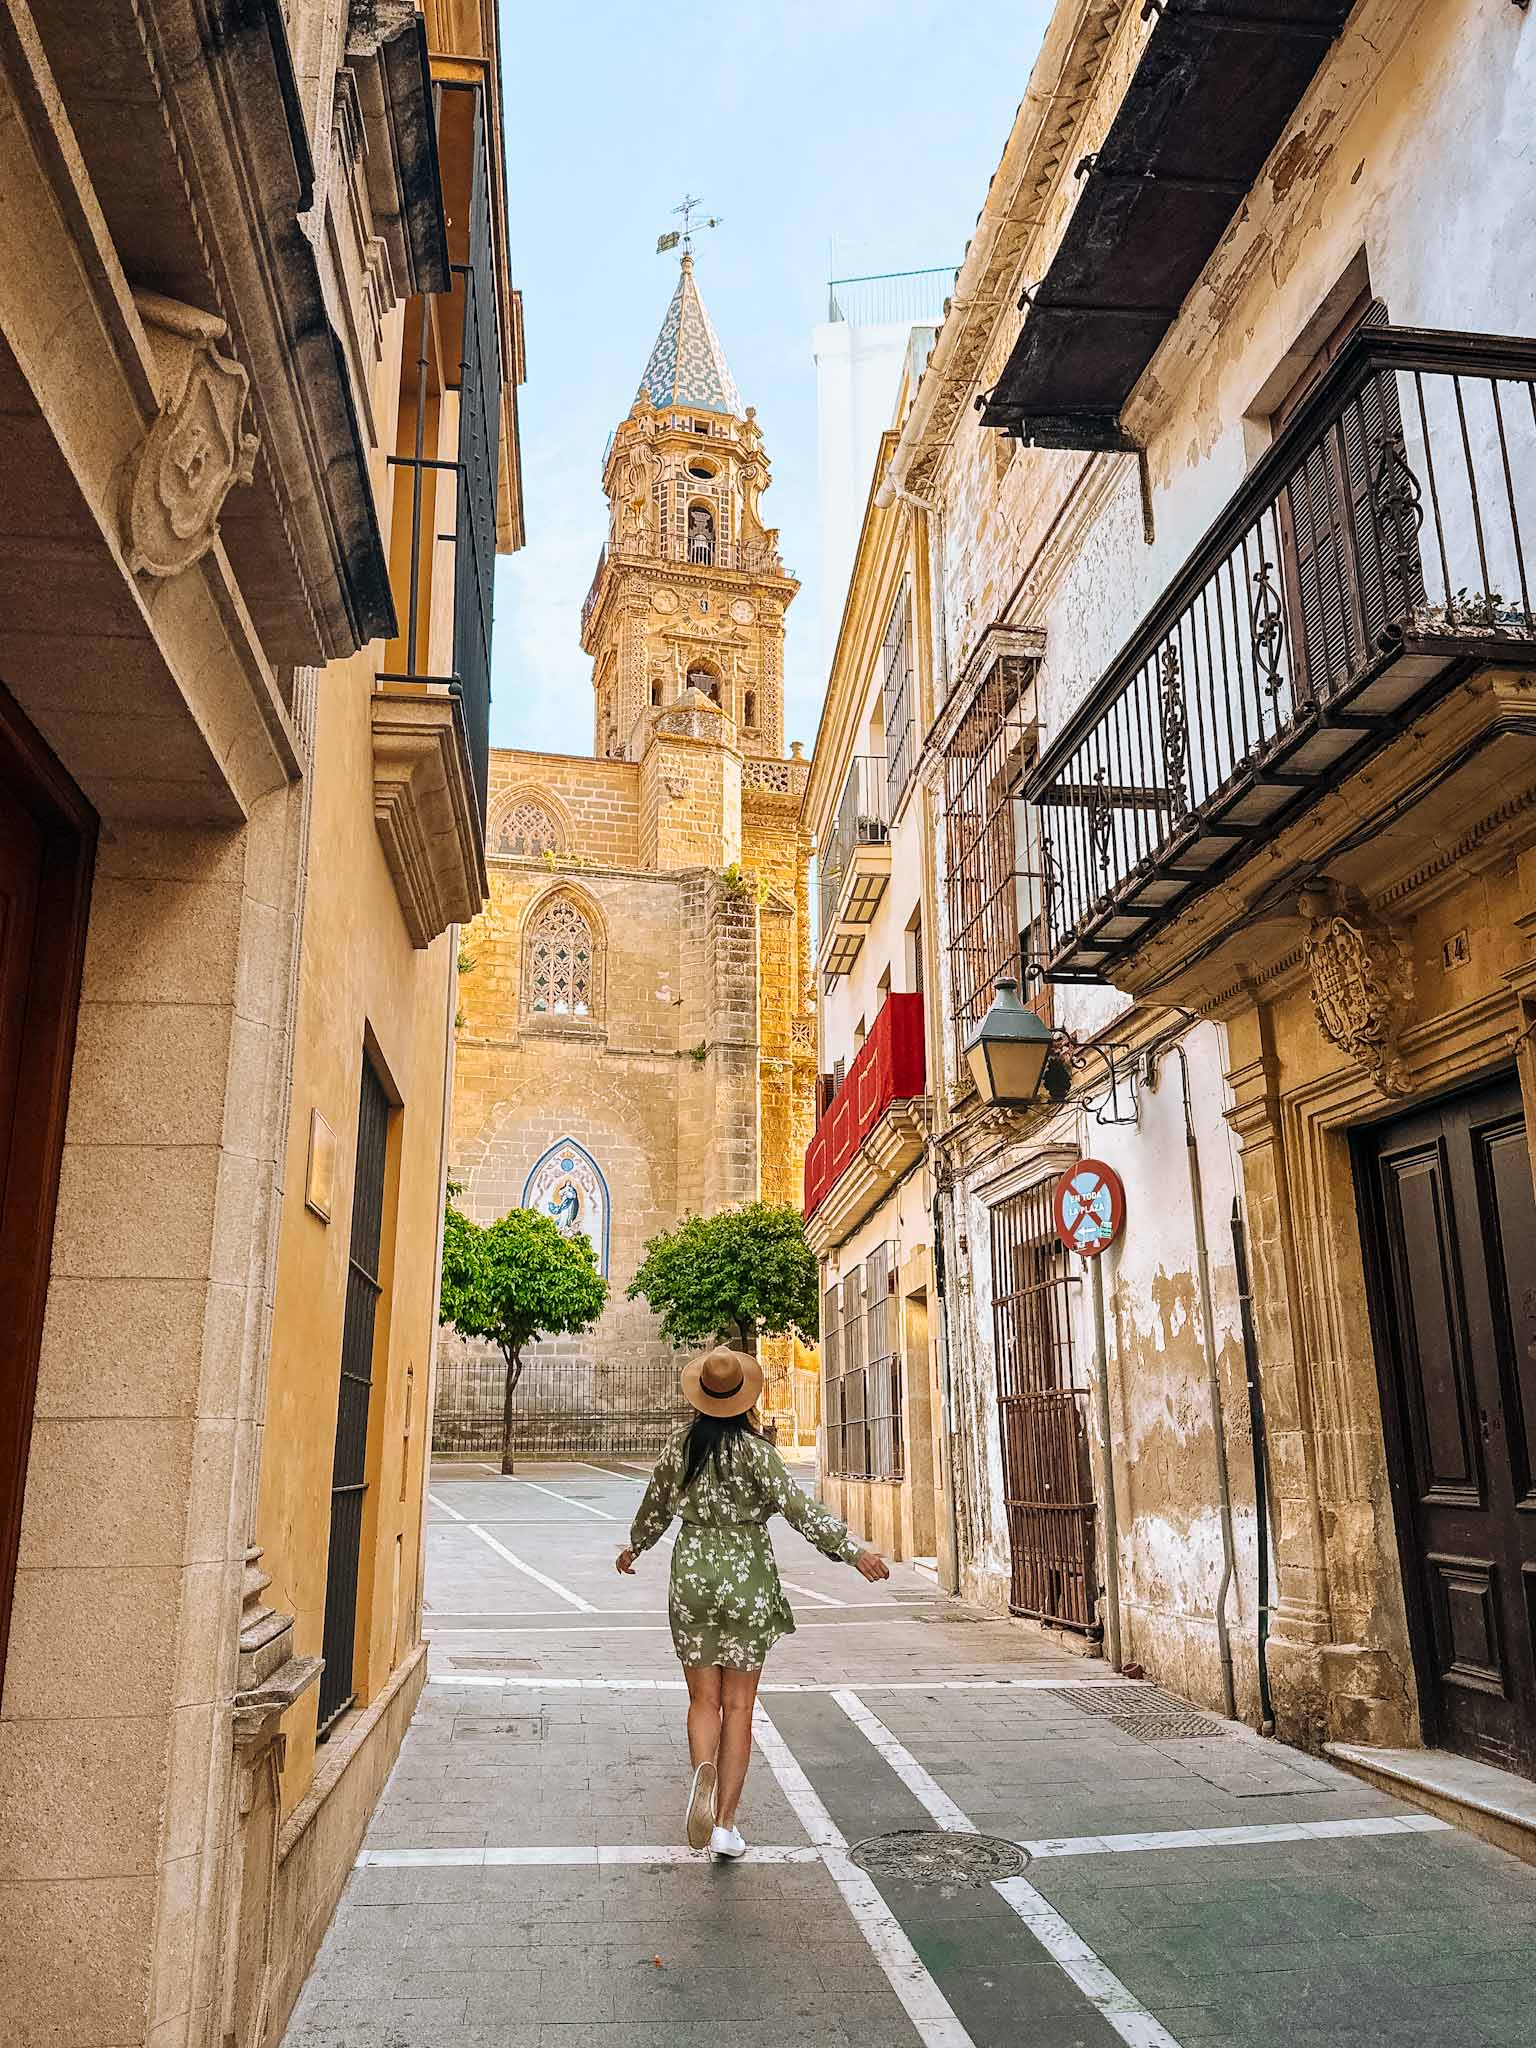 Best Instagram photo spots in Jerez de la Frontera, Spain